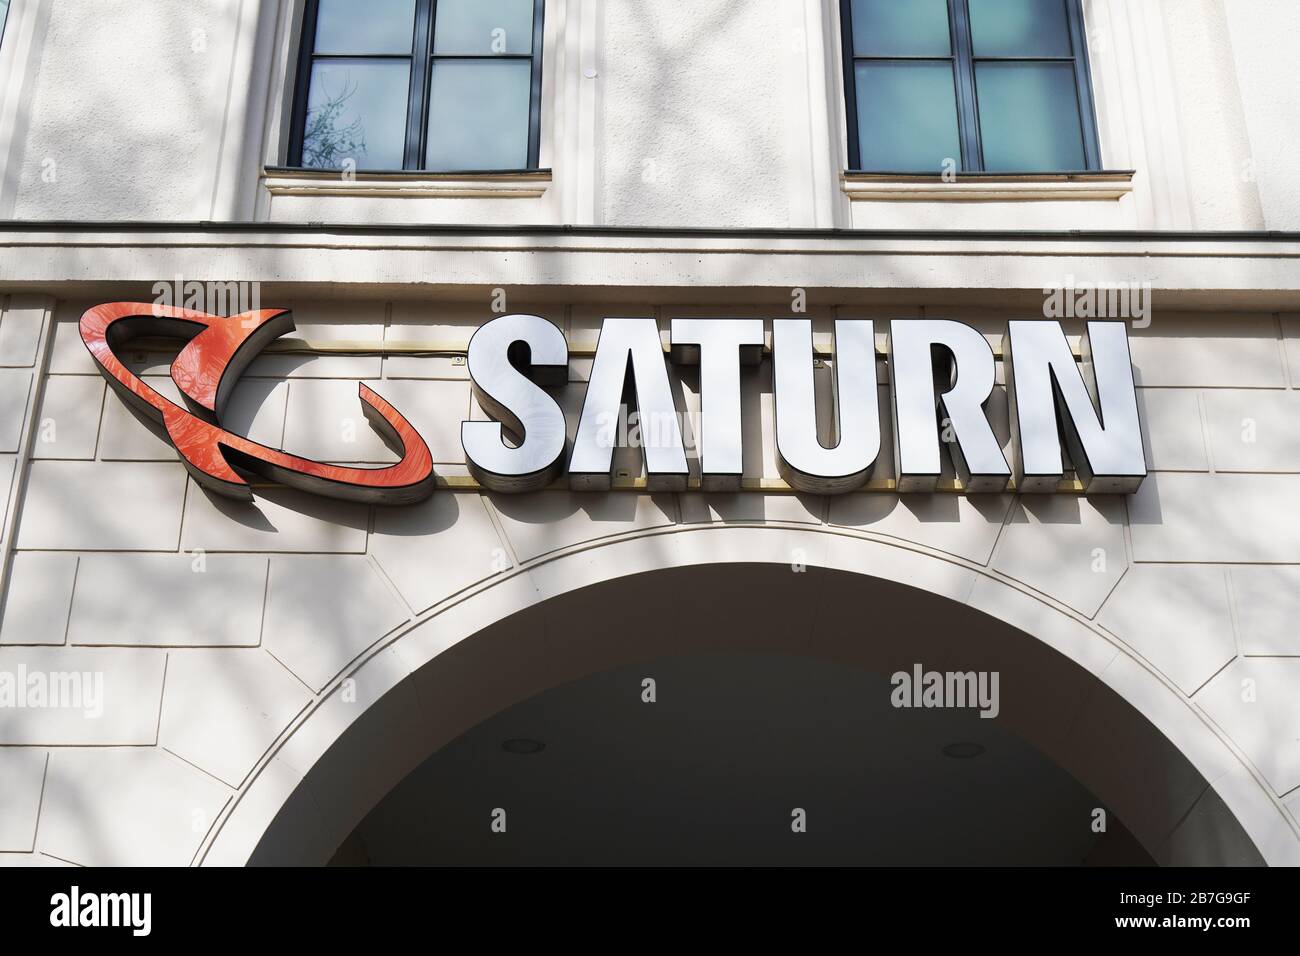 Hanovre, Allemagne - 2 mars 2020 : marque et logo Saturne du magasin allemand de chaînes d'électronique grand public Banque D'Images